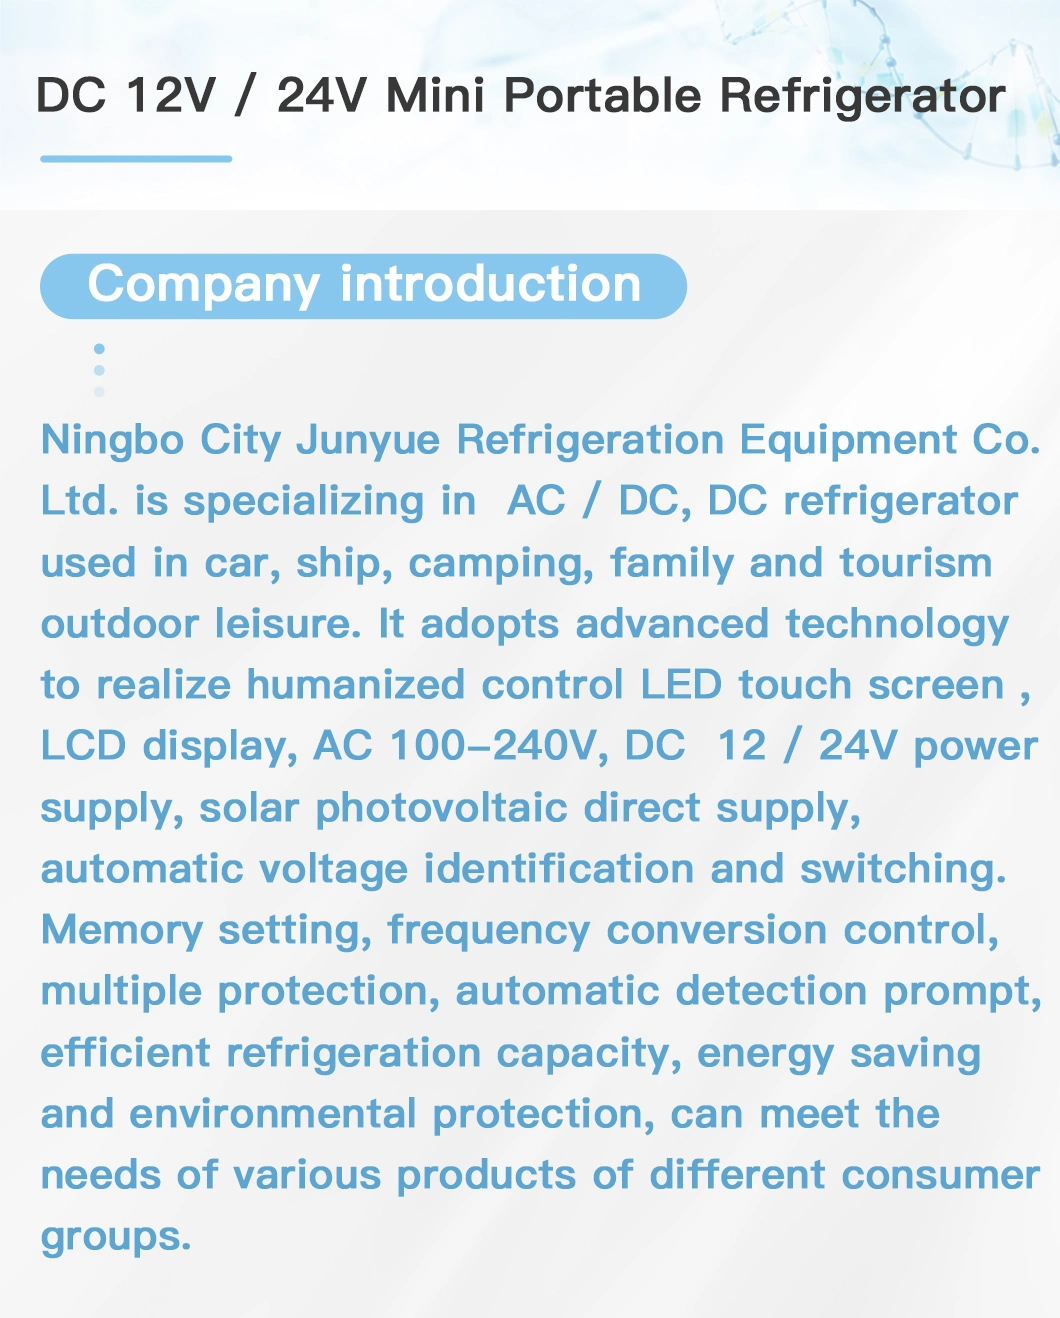 DC12V/24V 45L Mini Portable Car Refrigerator for Car/Home/Outdoors